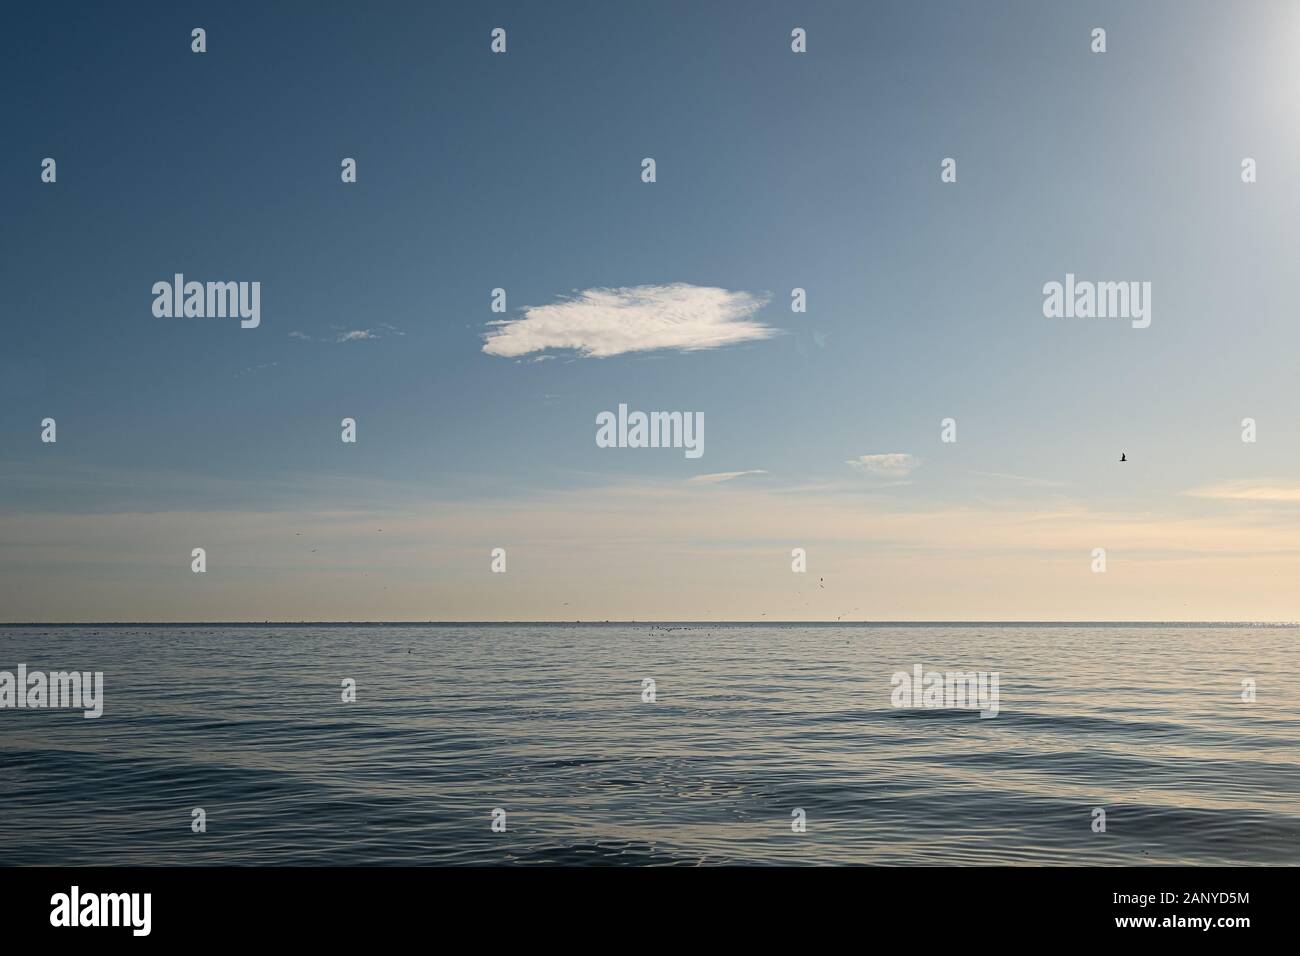 vista panorámica del horizonte sobre el mar tranquilo con una nube en el cielo durante la hora dorada Foto de stock